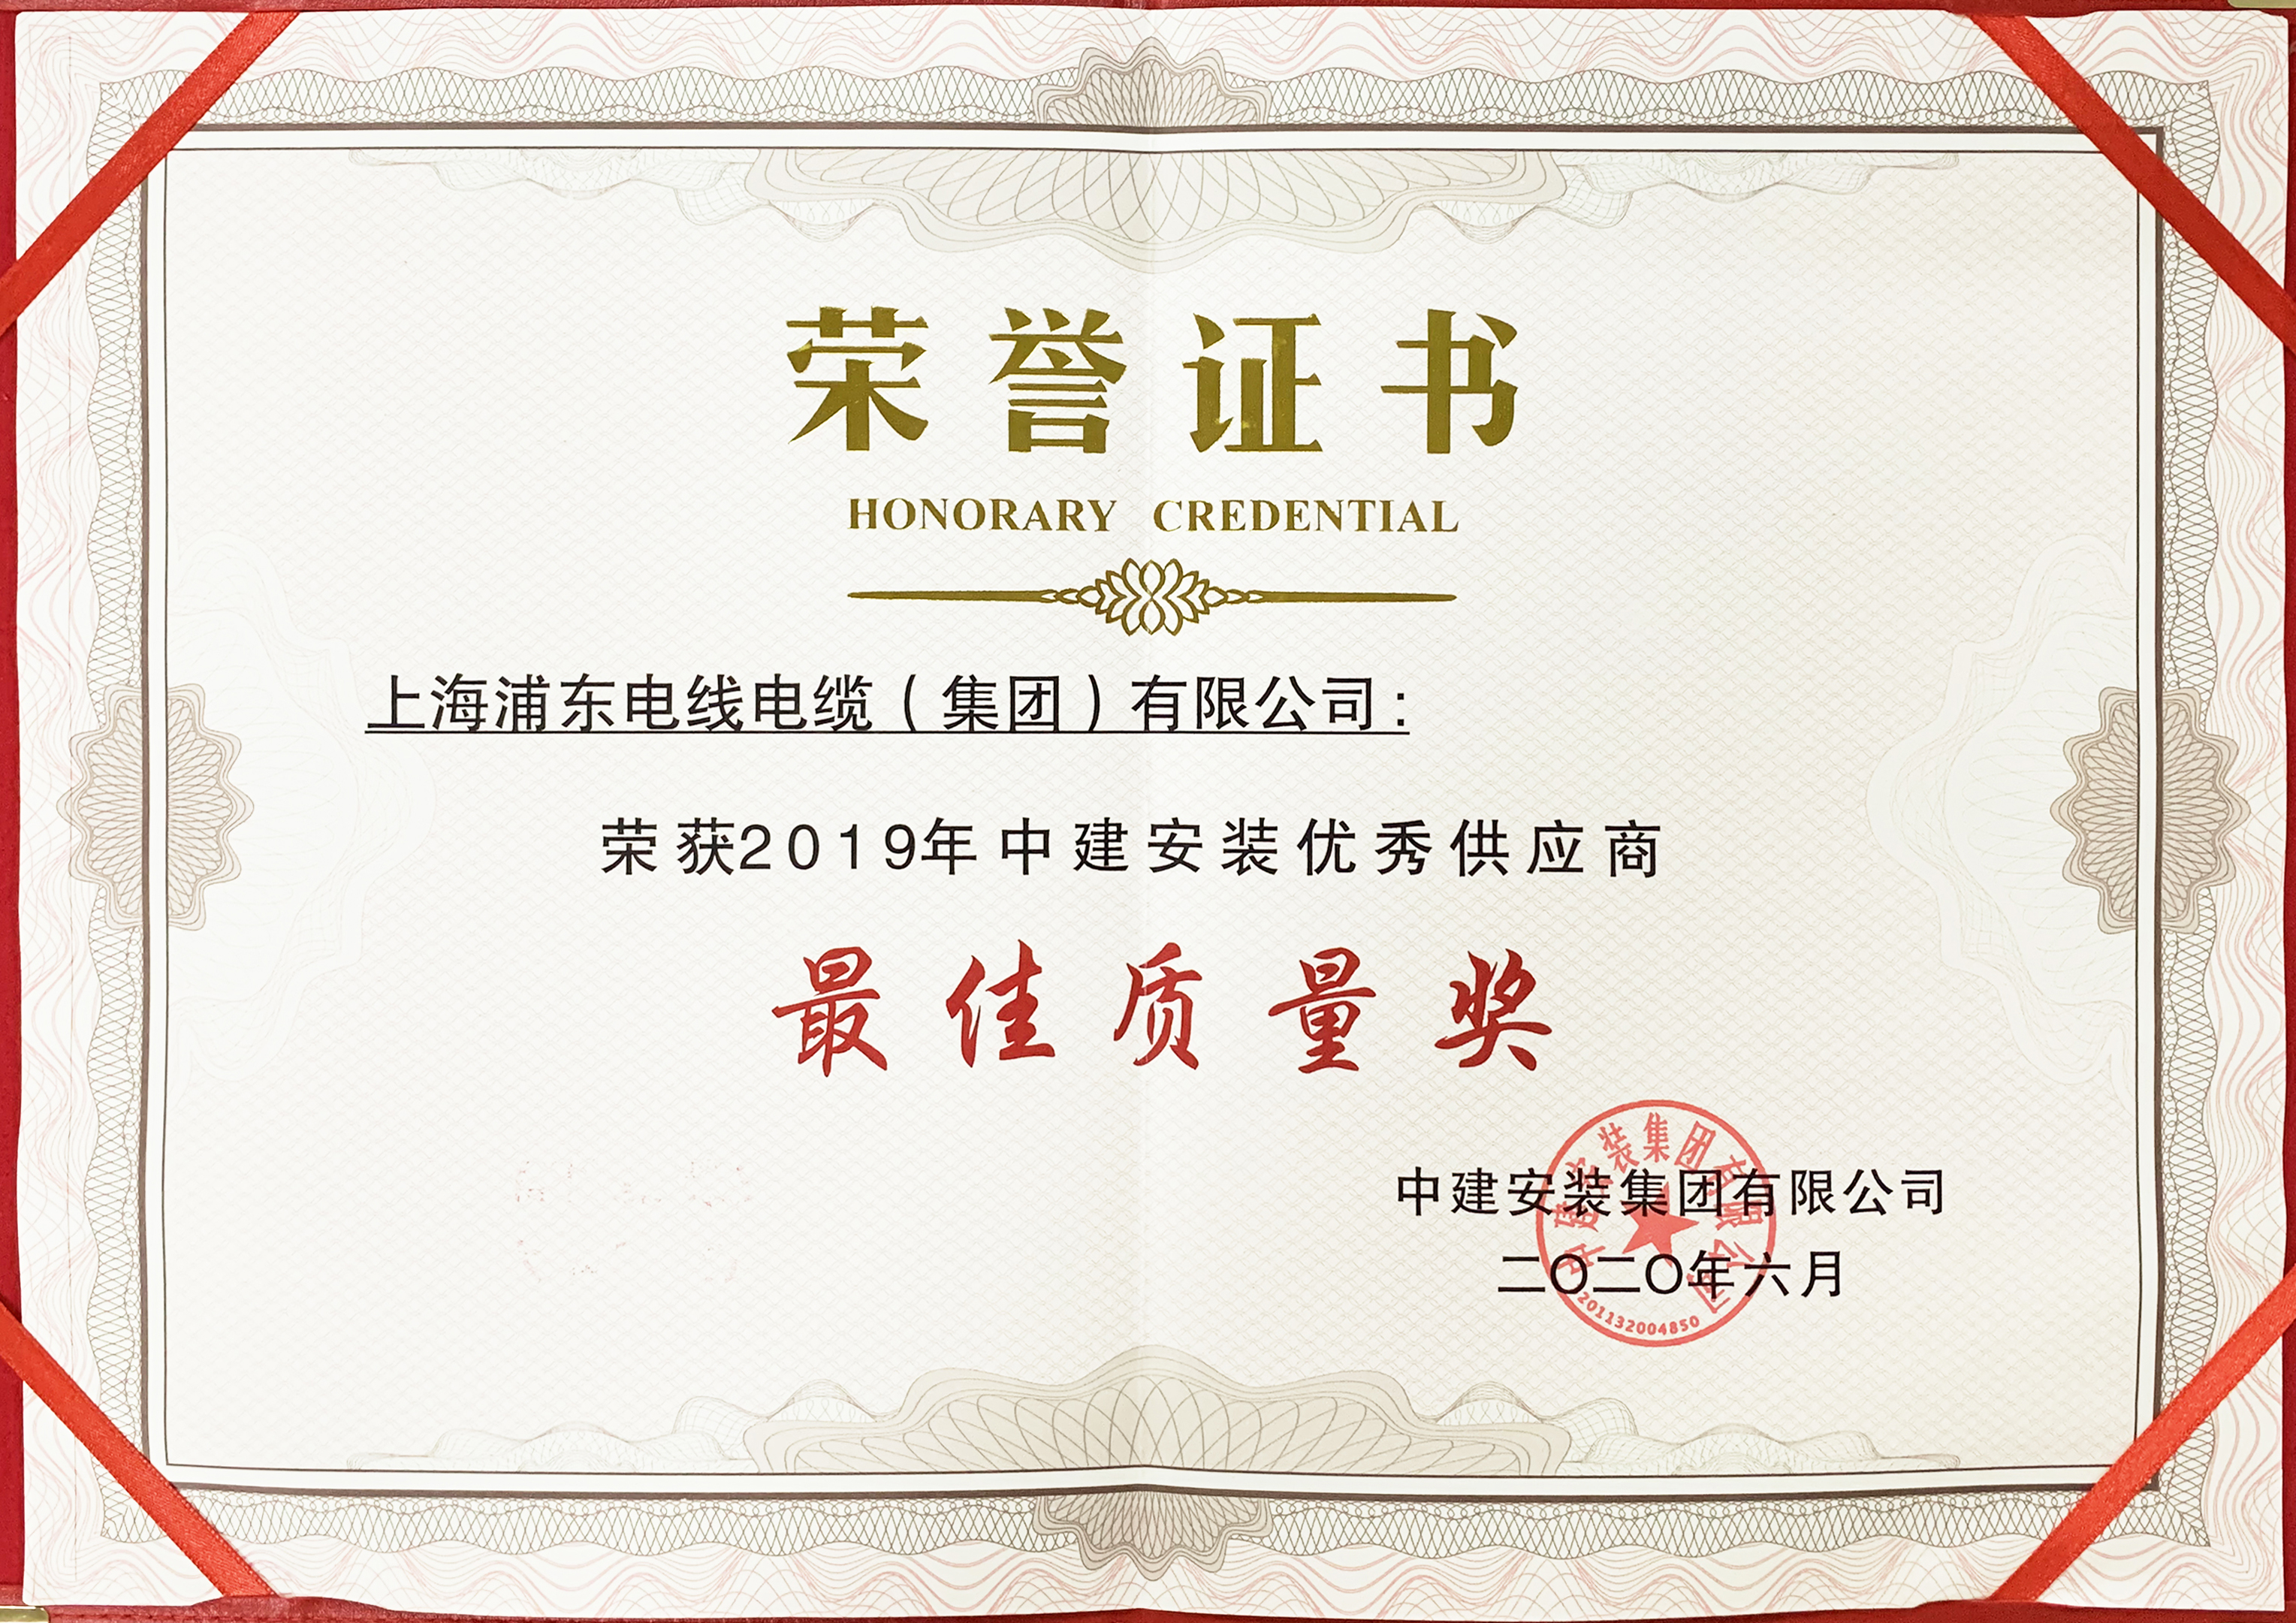 上海浦东电线电缆集团荣获中建安装“2019年度优秀供应商最佳质量奖”荣誉